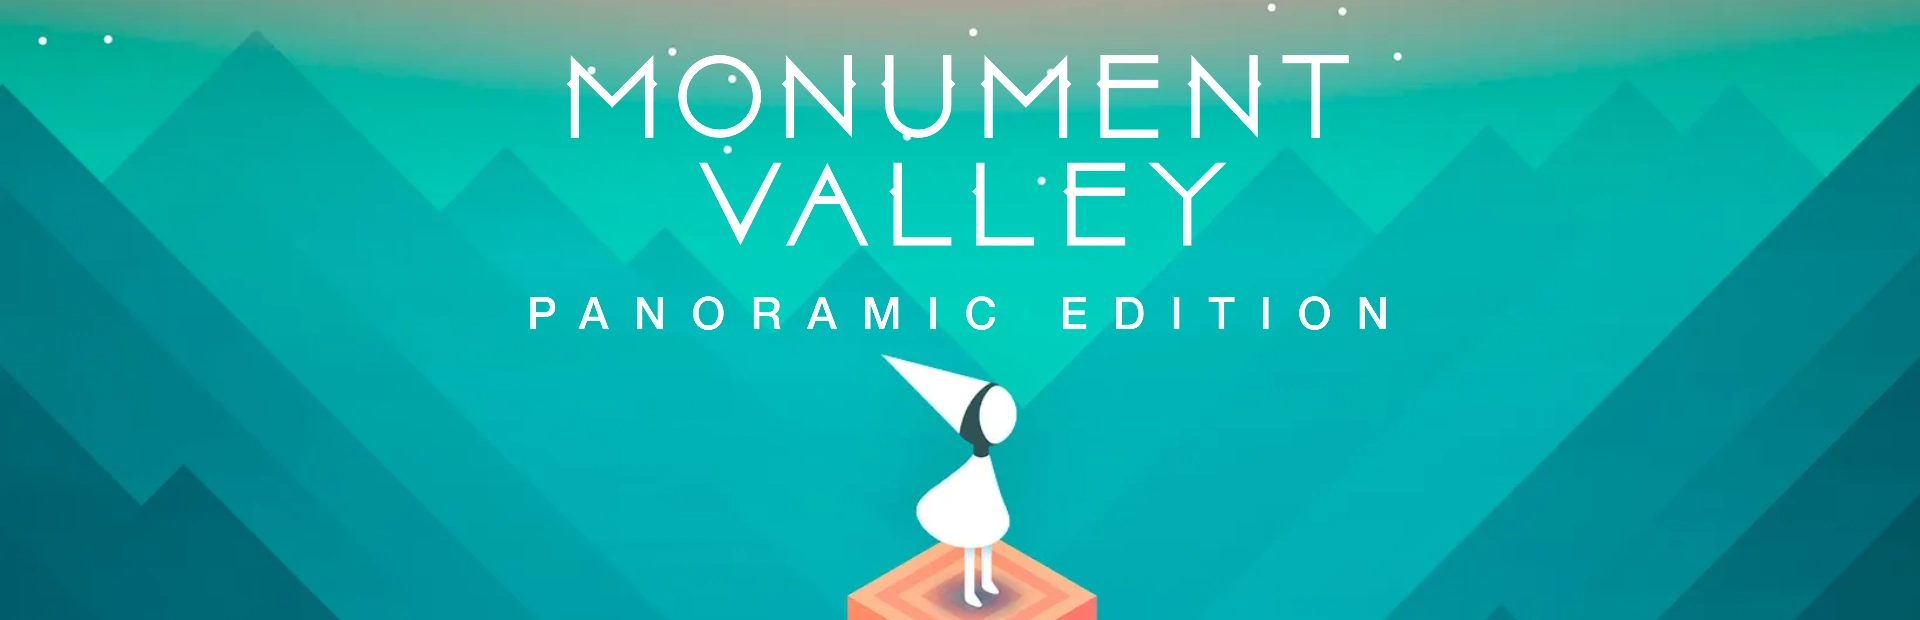 دانلود بازی Monument Valley: Panoramic Edition برای کامپیوتر | گیمباتو